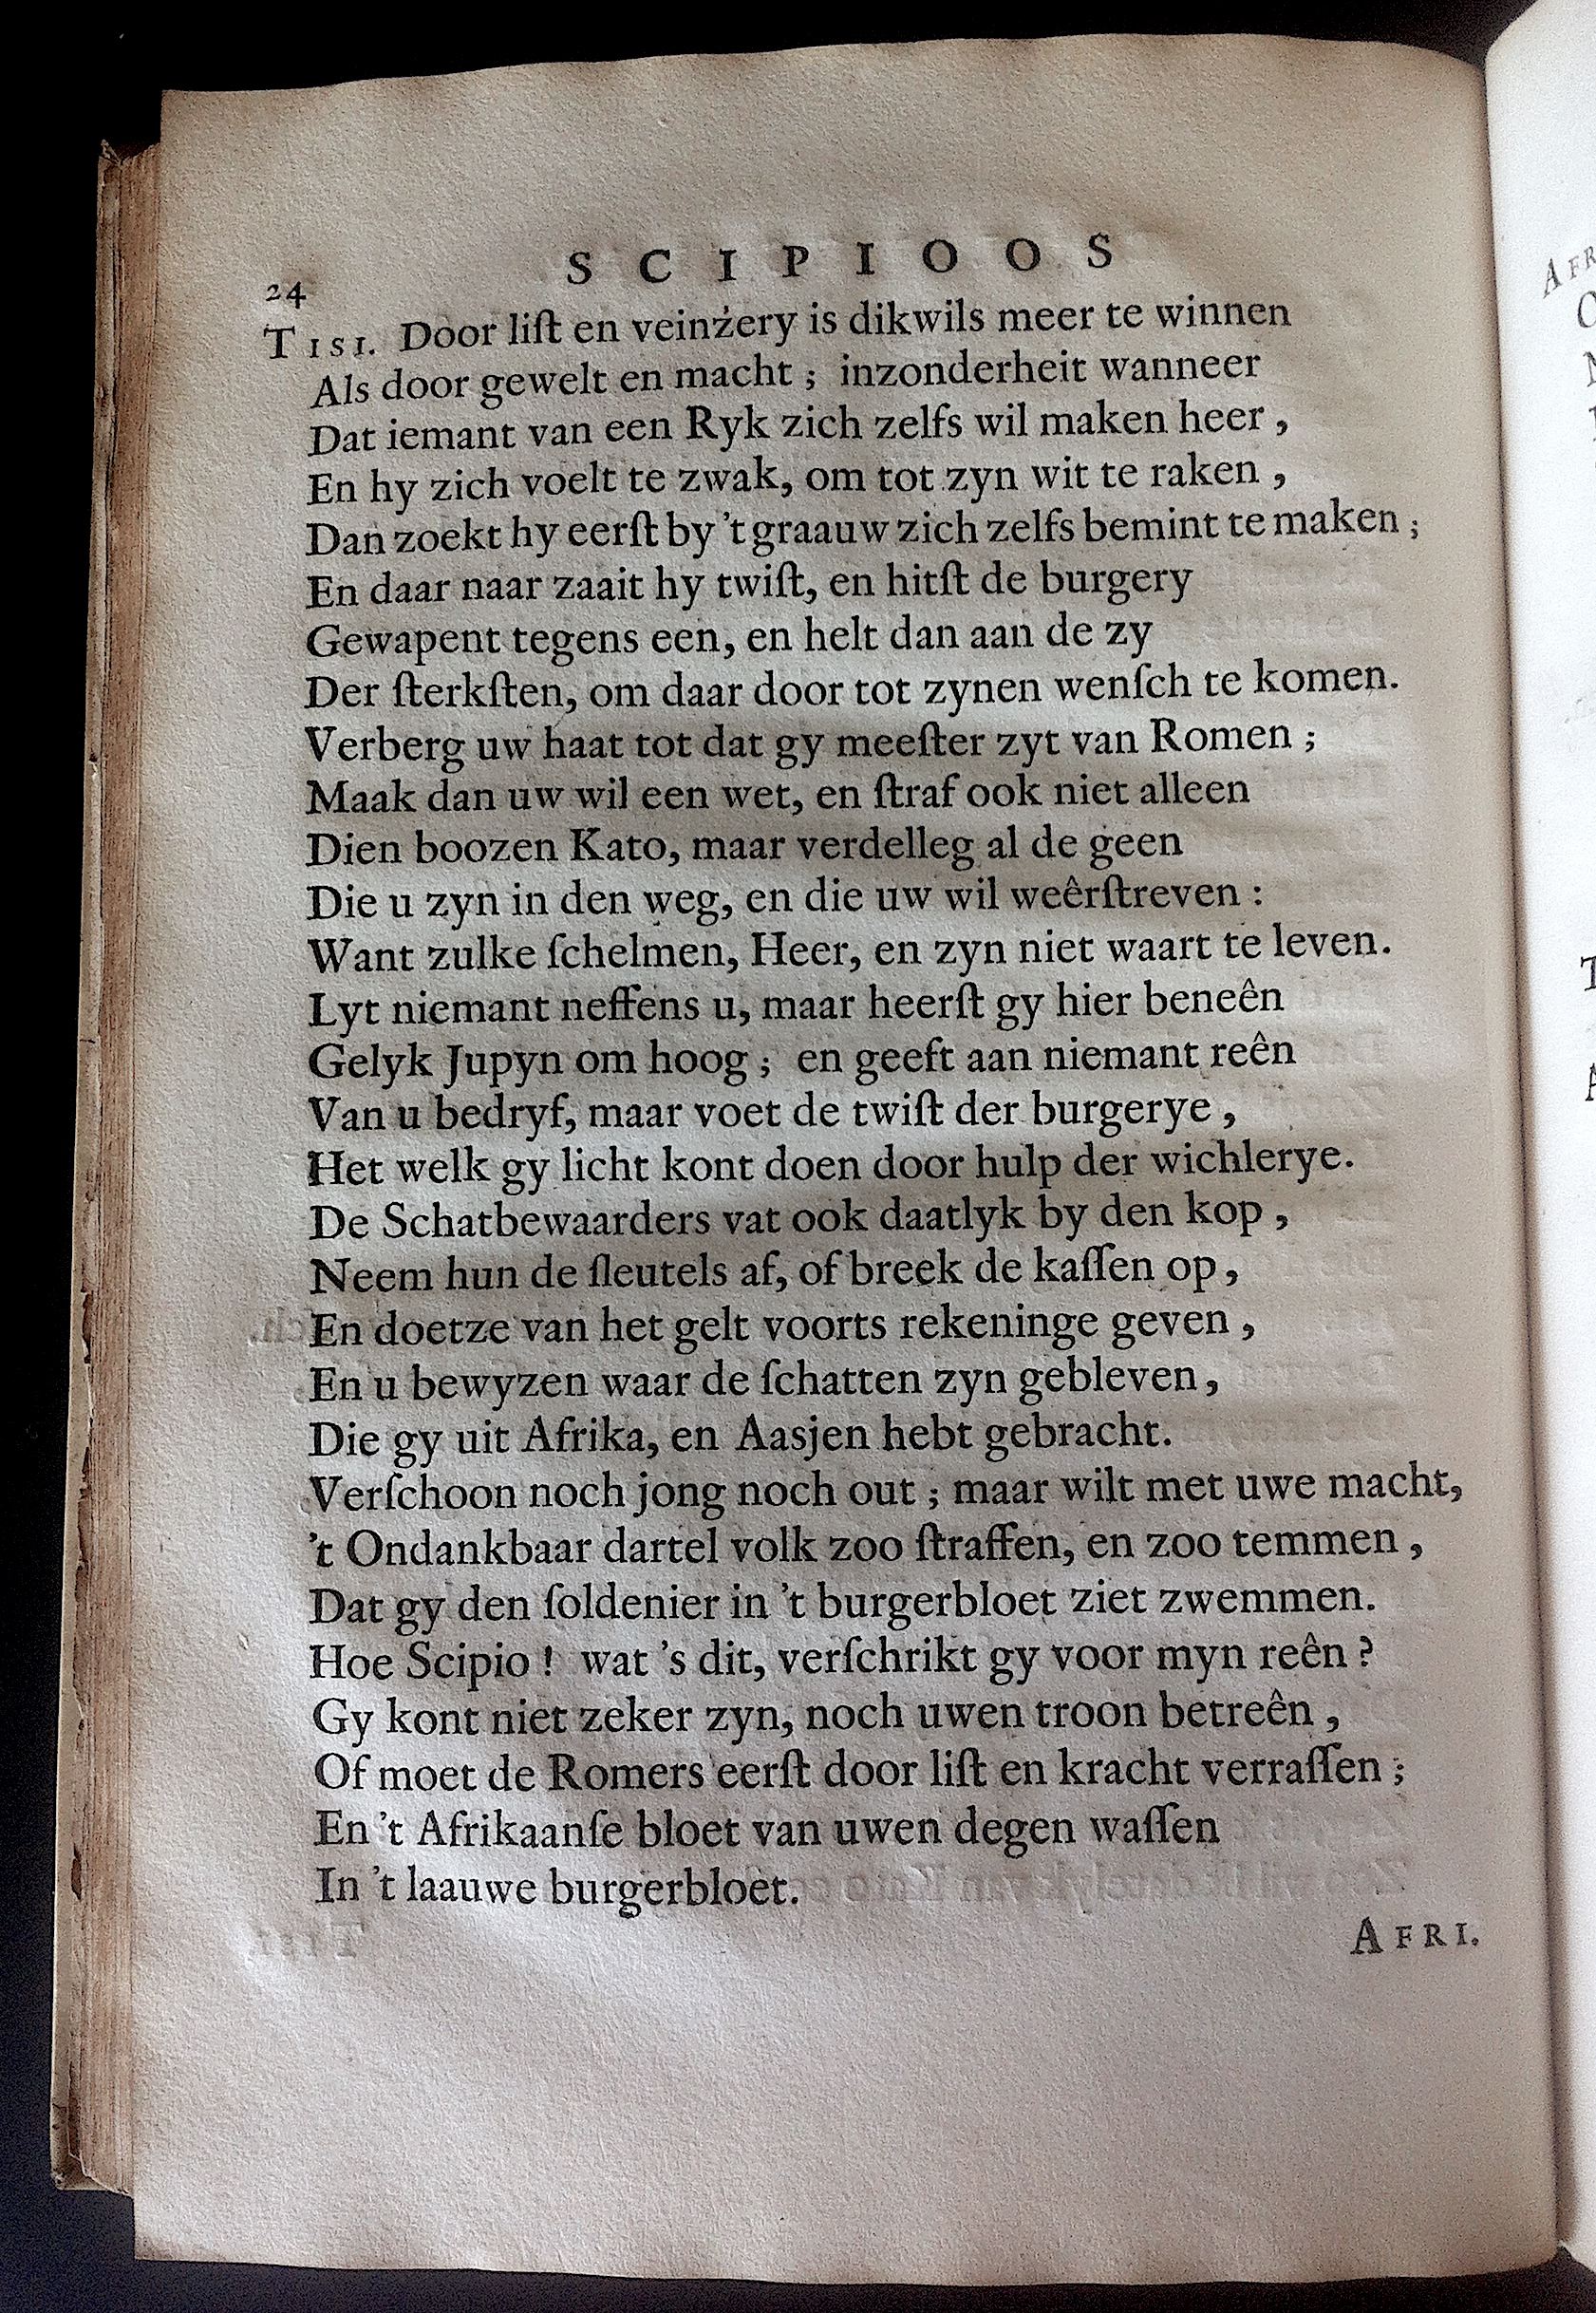 BoccardScipioFolio1658p24